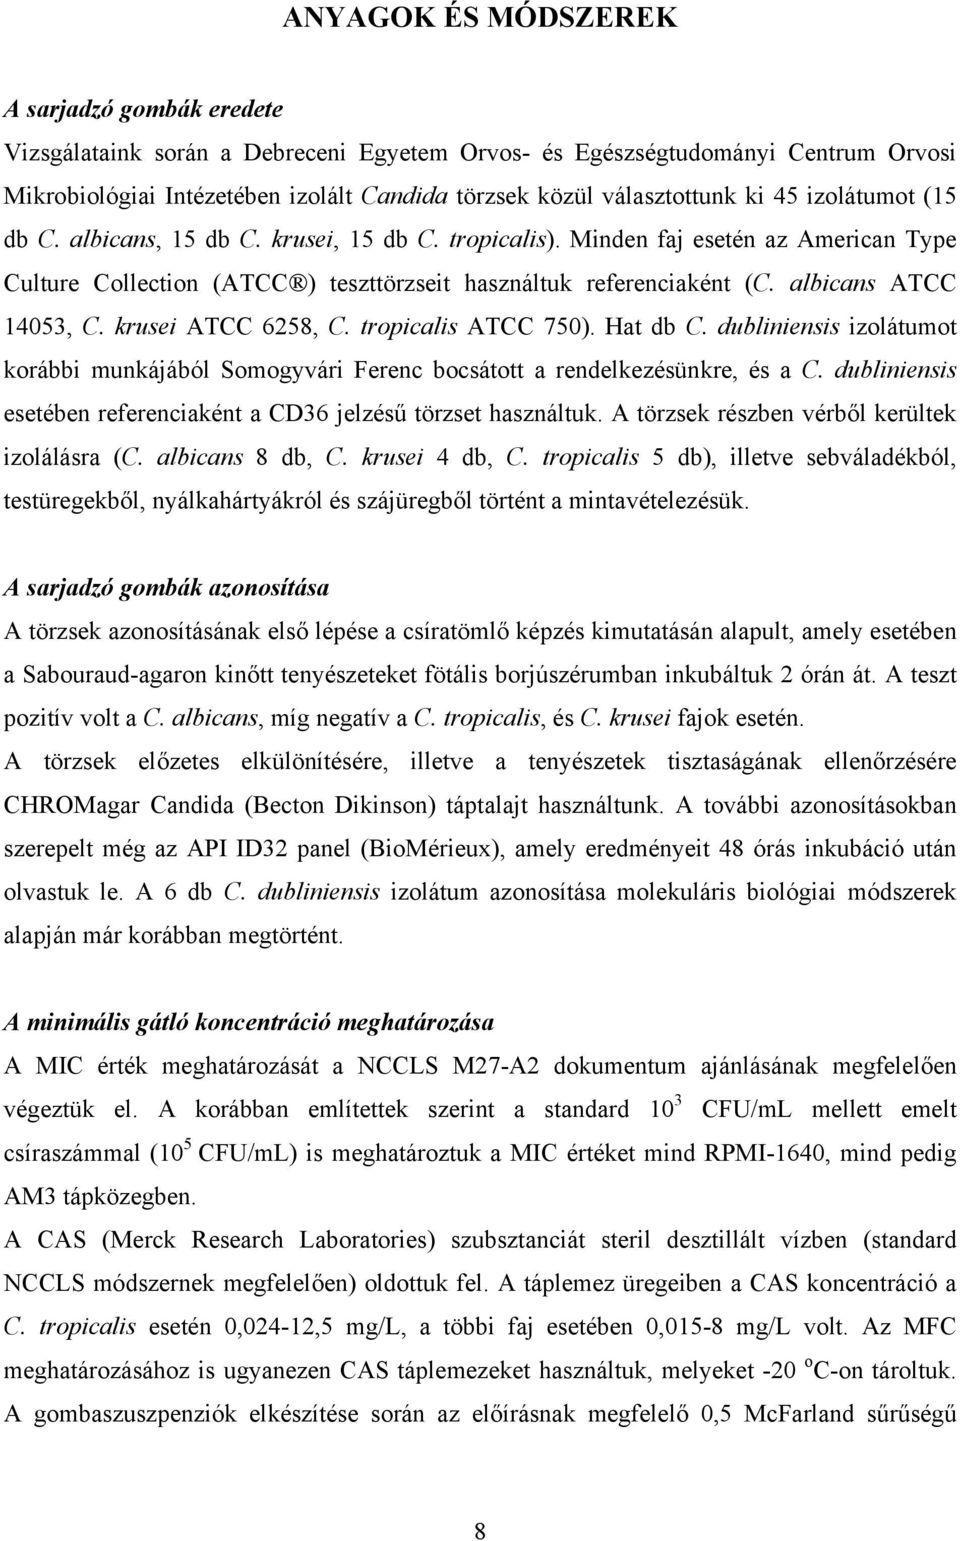 albicans ATCC 14053, C. krusei ATCC 6258, C. tropicalis ATCC 750). Hat db C. dubliniensis izolátumot korábbi munkájából Somogyvári Ferenc bocsátott a rendelkezésünkre, és a C.